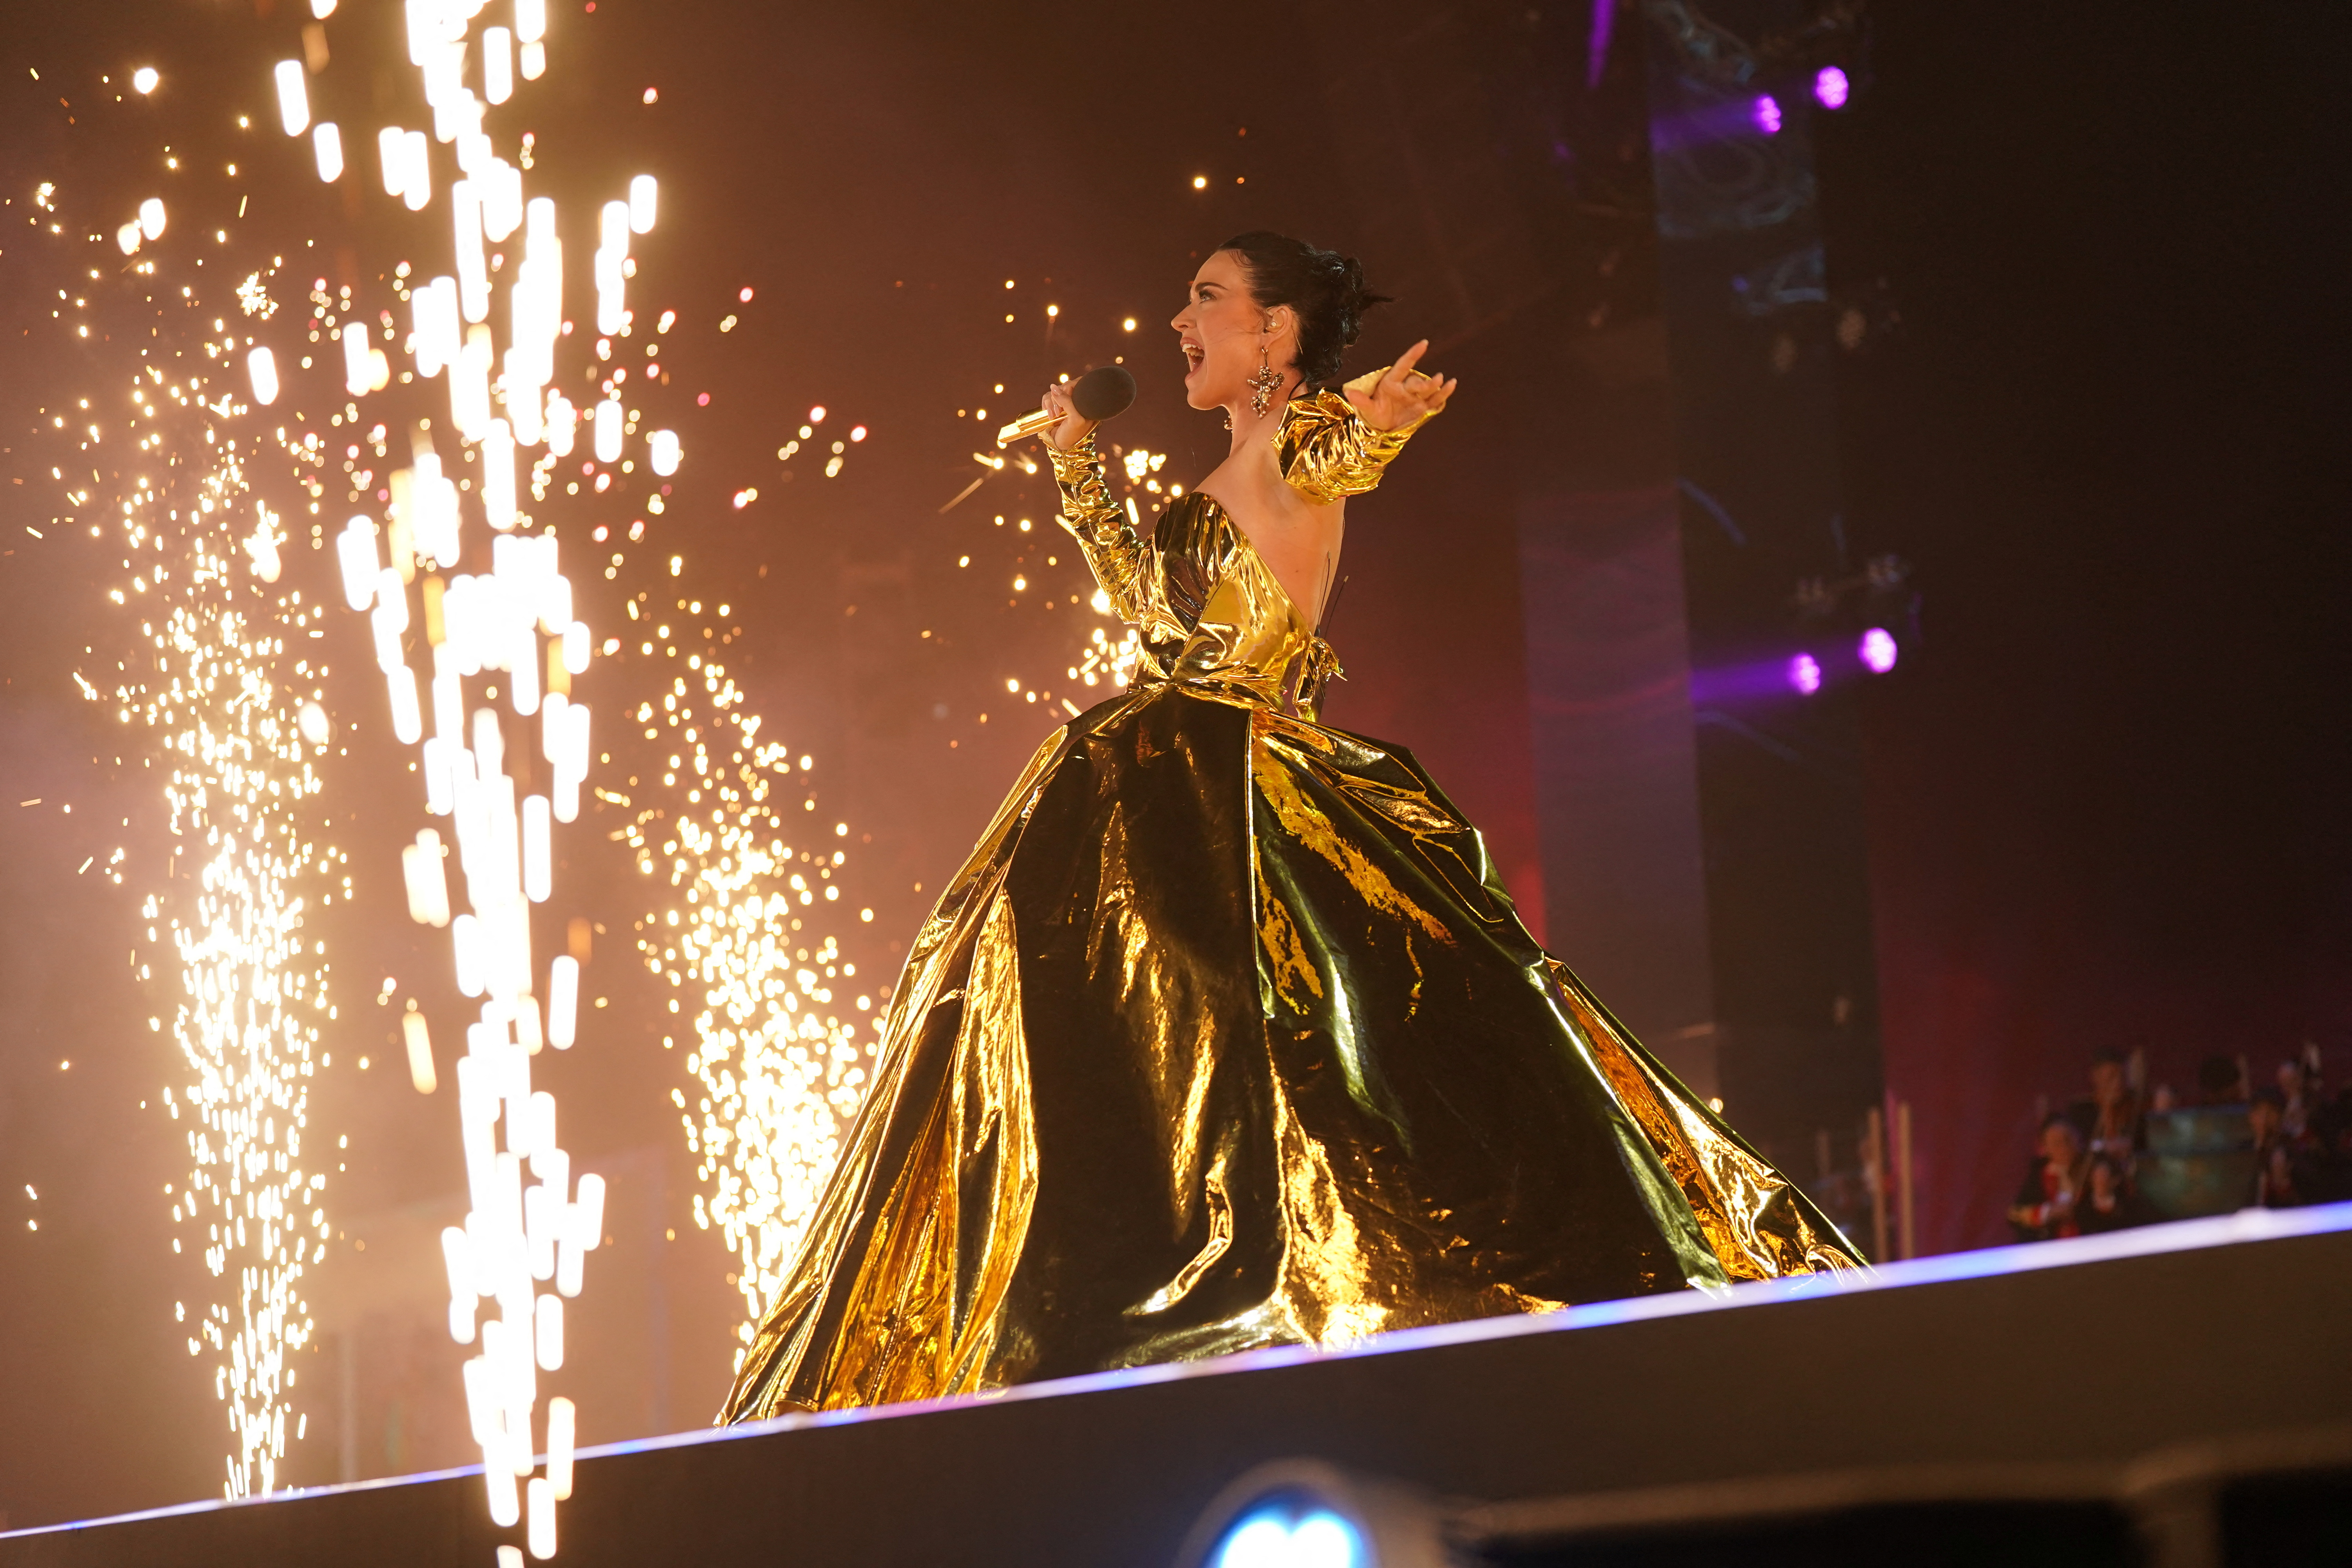 La cantante Katy Perry participó del concierto por la coronación del rey Carlos III (Arthur Edwards/Pool via REUTERS)